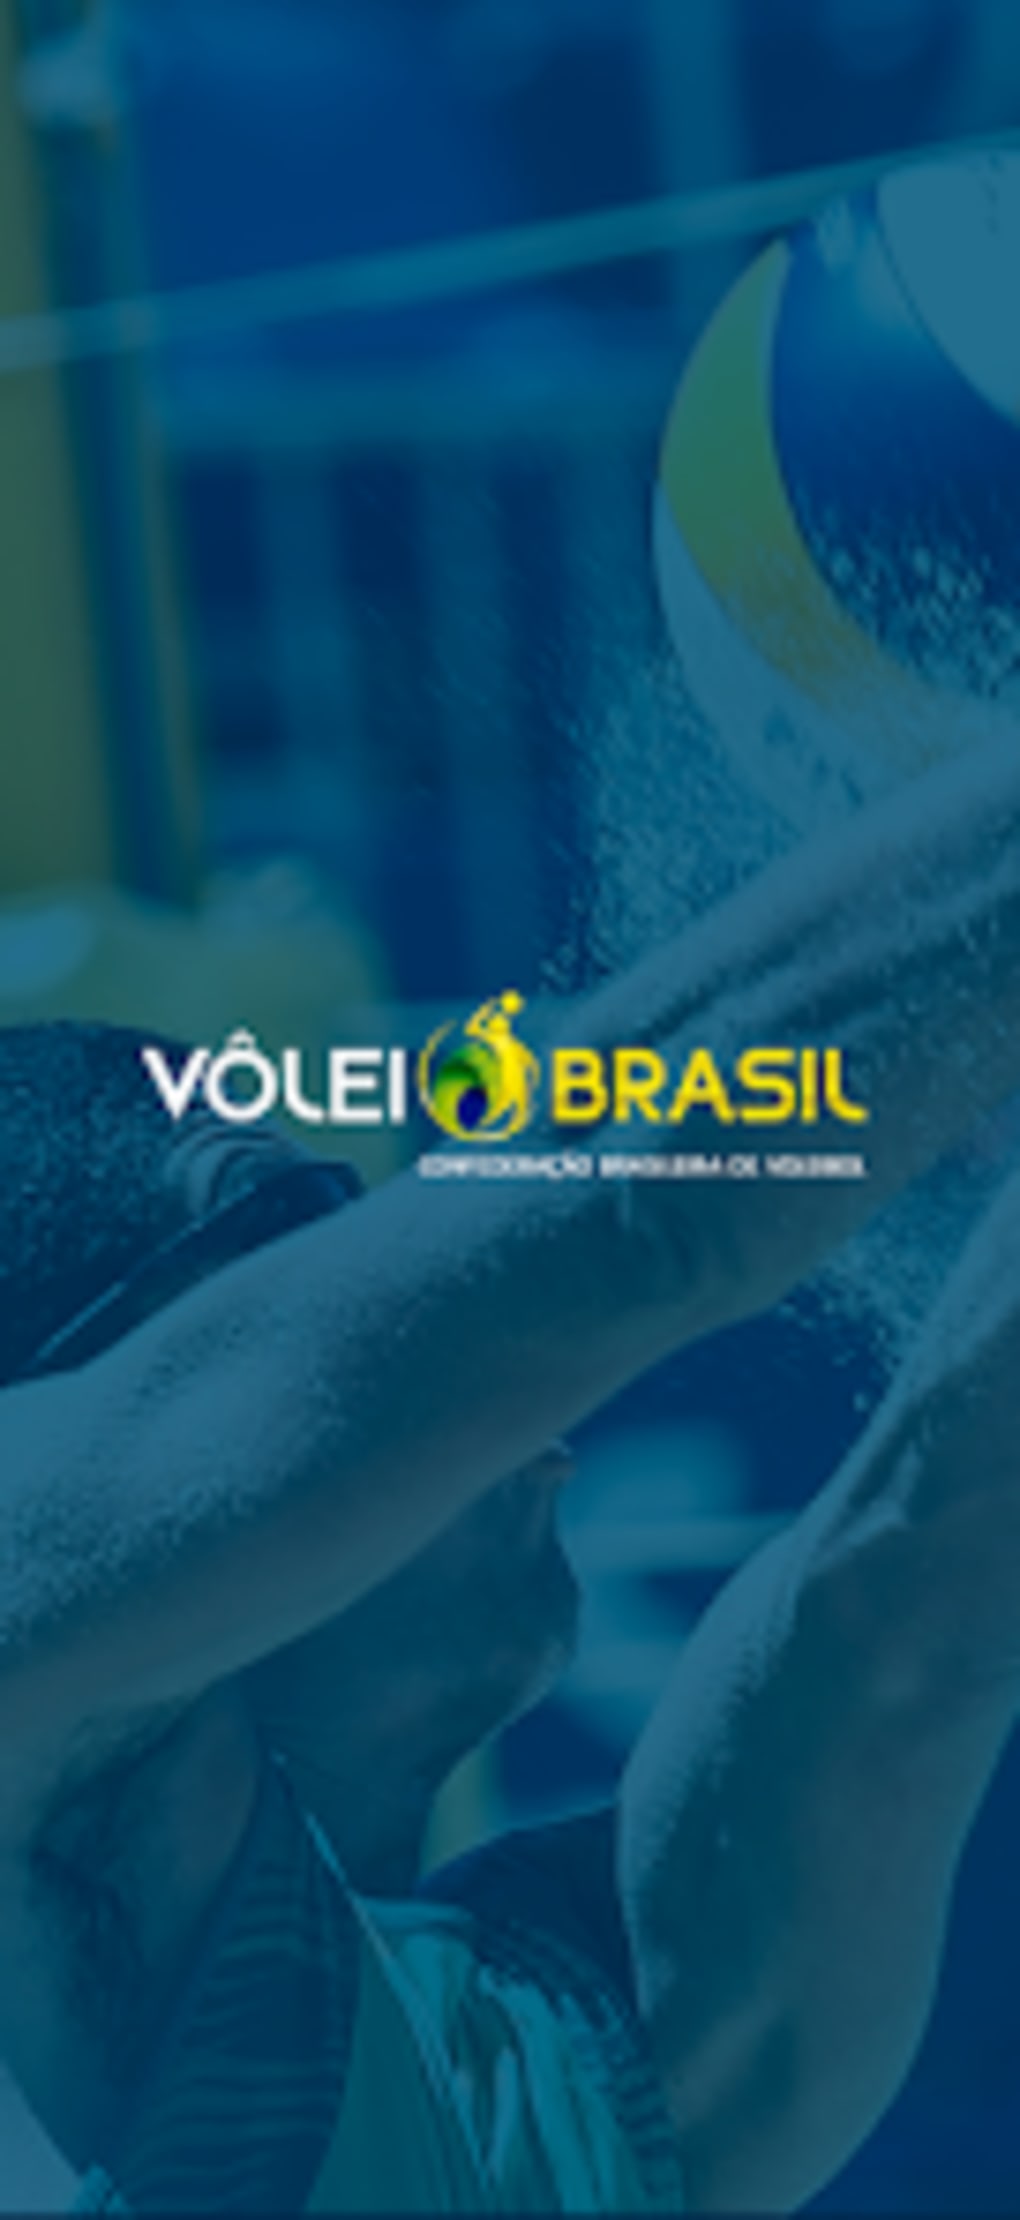 CBV - Confederação Brasileira for Android - Download